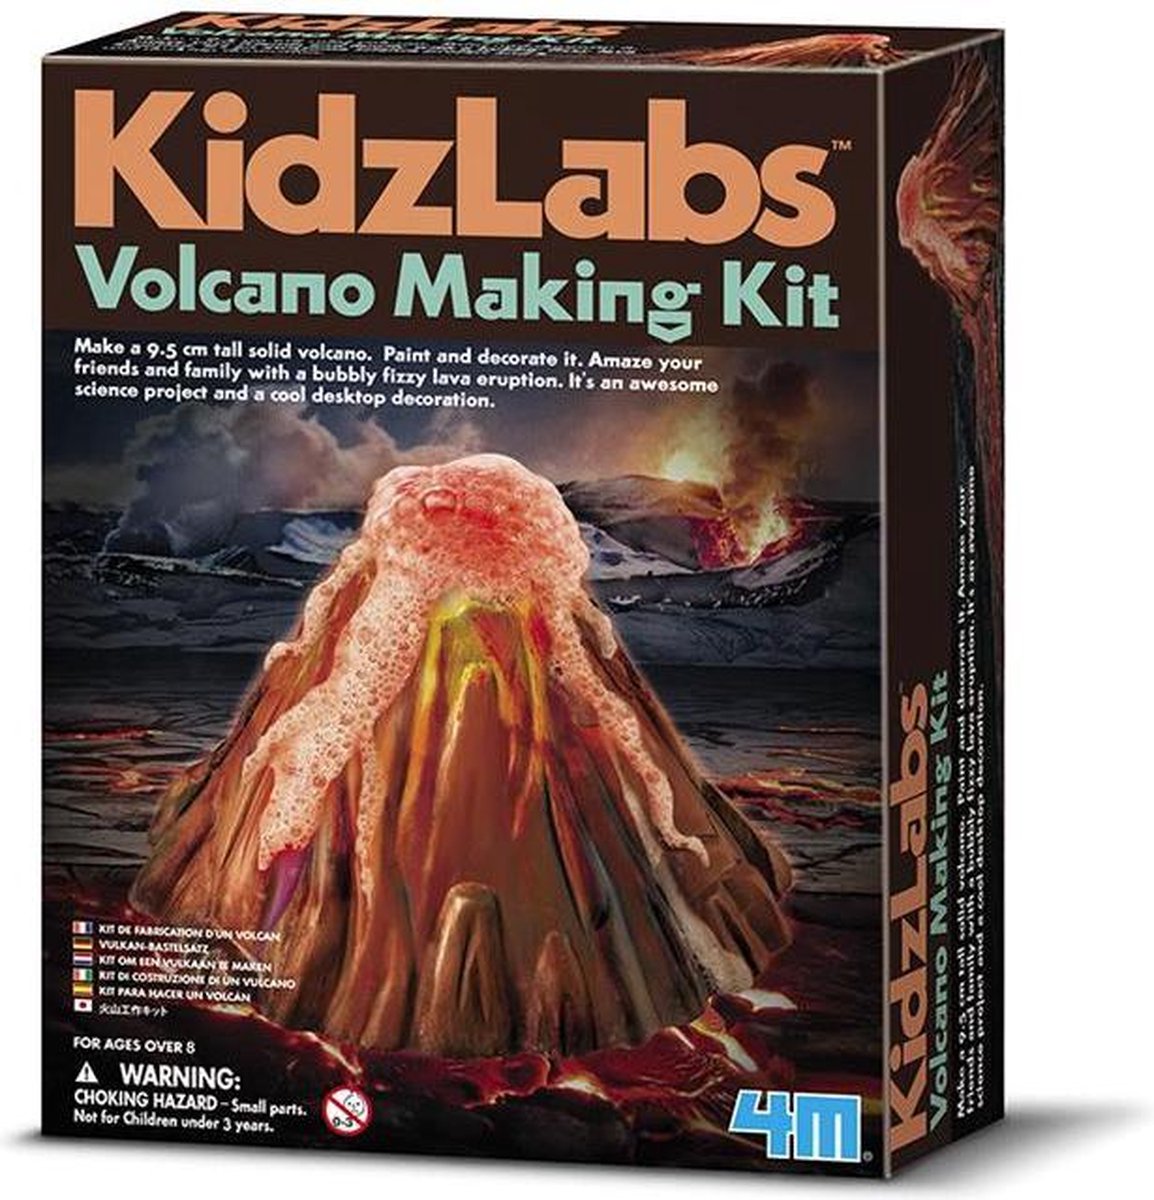 4M Kidzlabs Sciene: Vulkaan Groot - Zwart